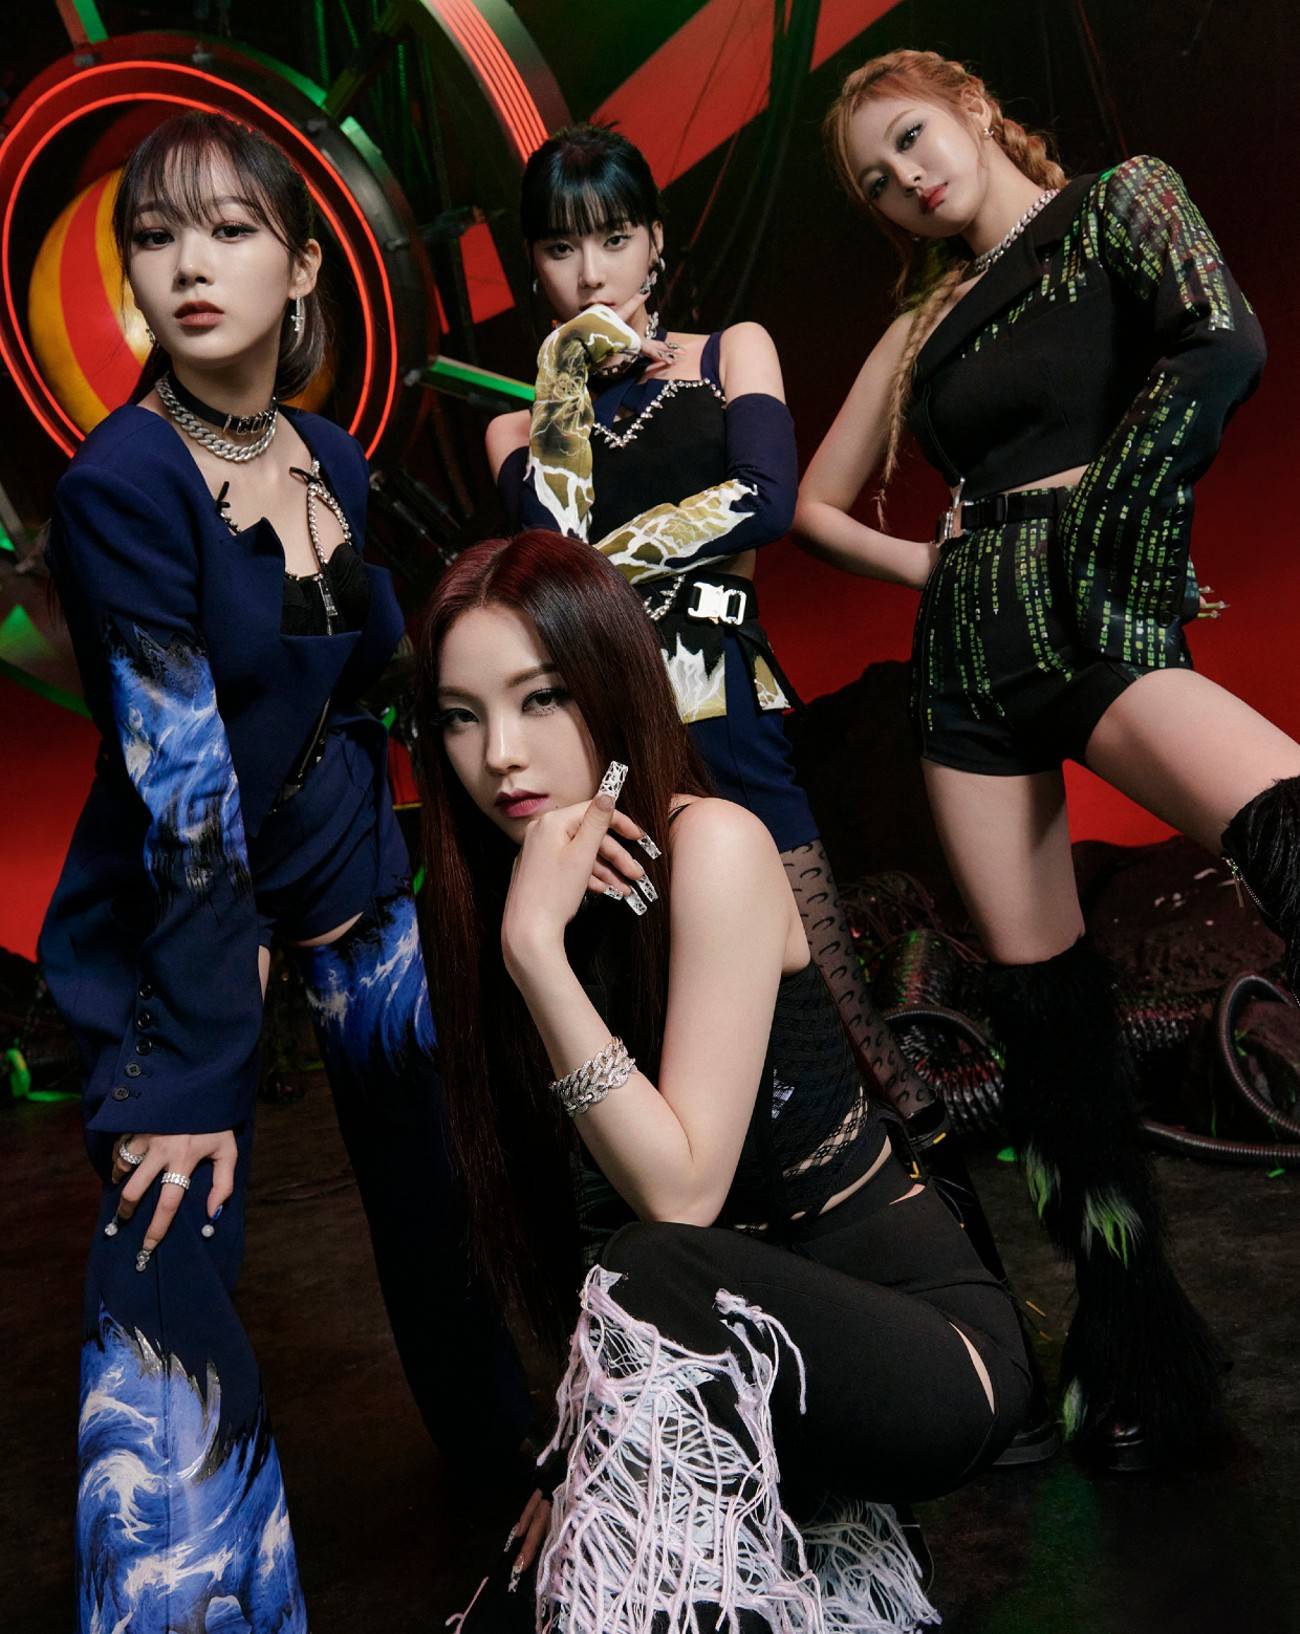 Reportage au concert d’Aespa, les reines de la K-pop digitale